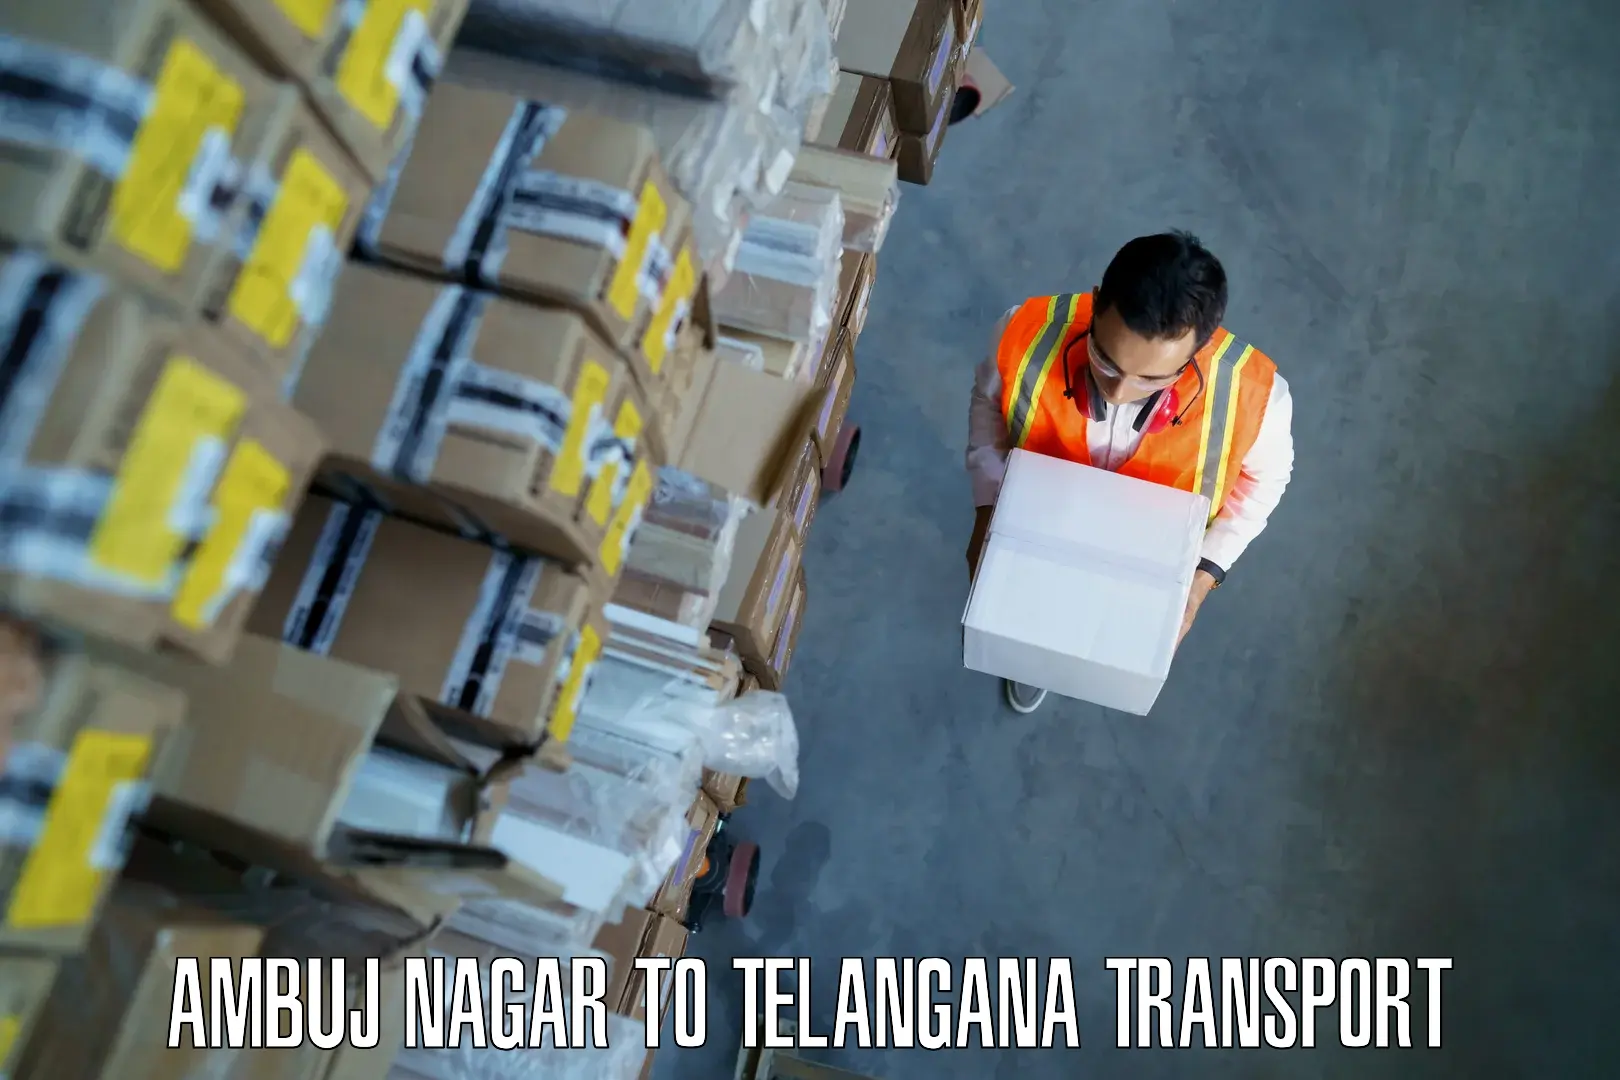 Luggage transport services in Ambuj Nagar to Choppadandi